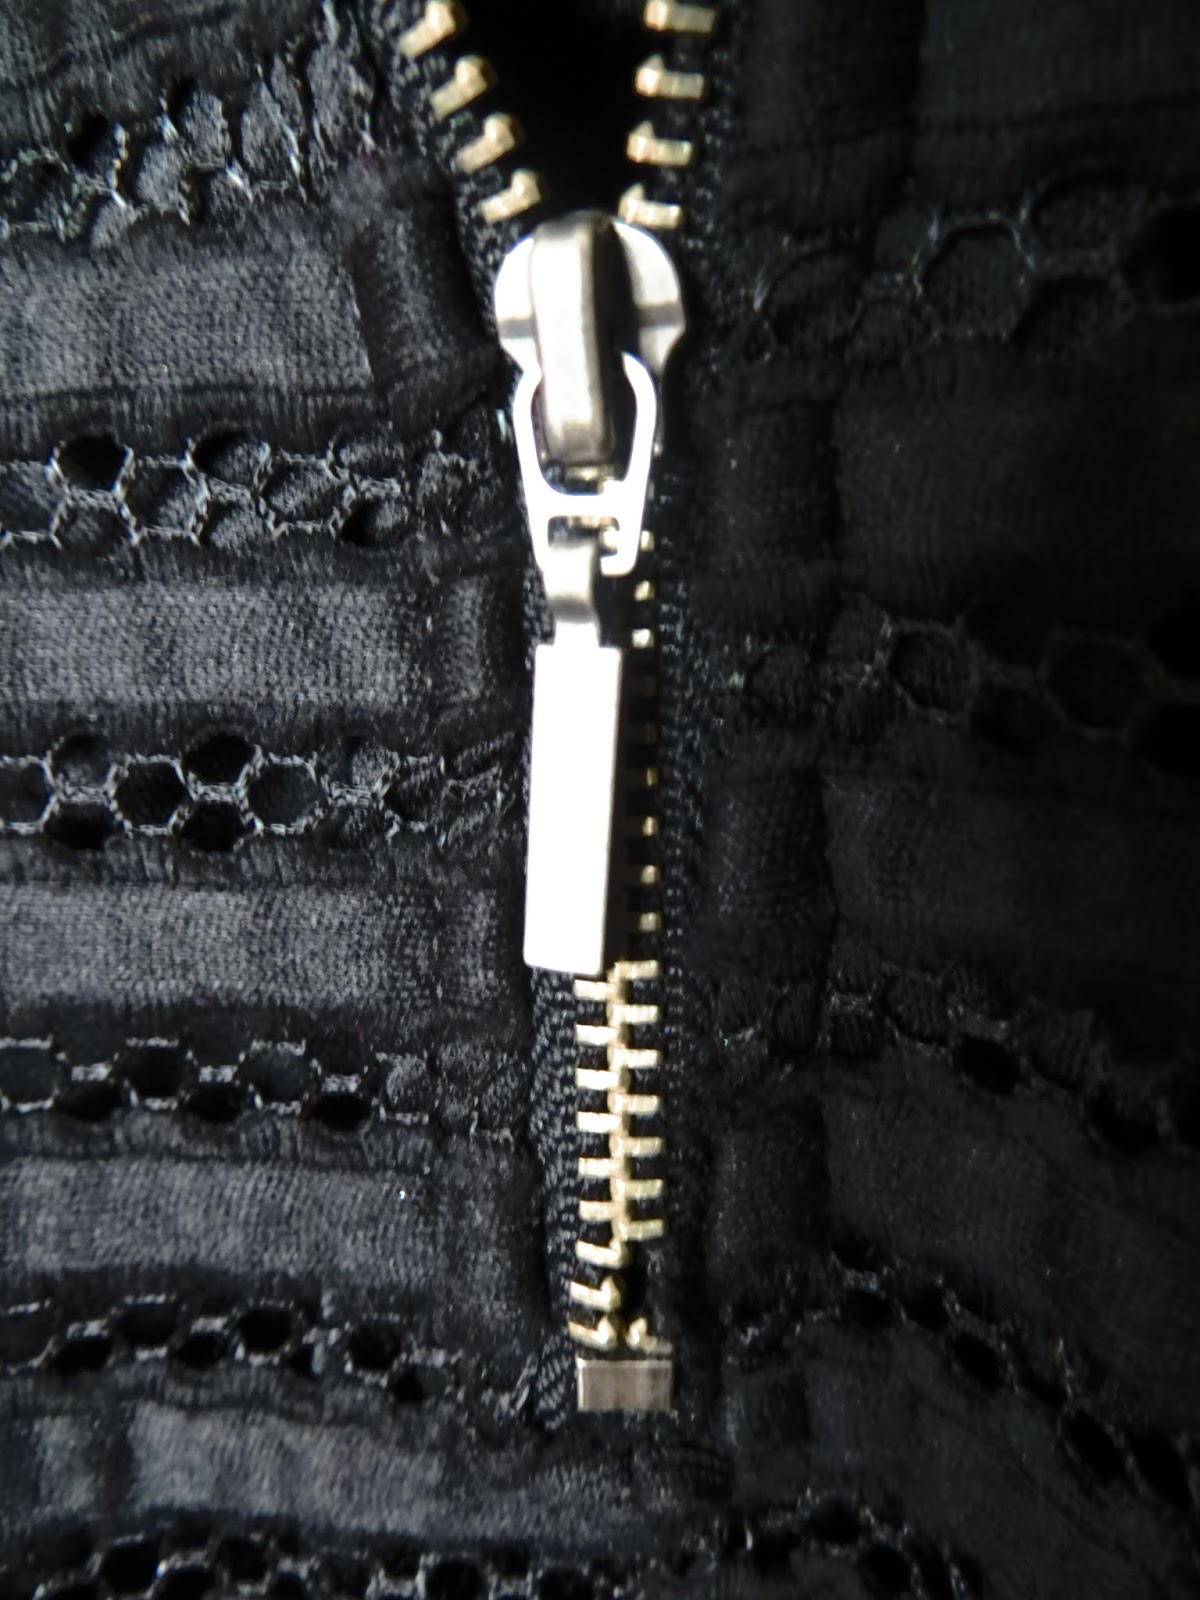 The Confident Journal: One Way to Fix a Broken Zipper